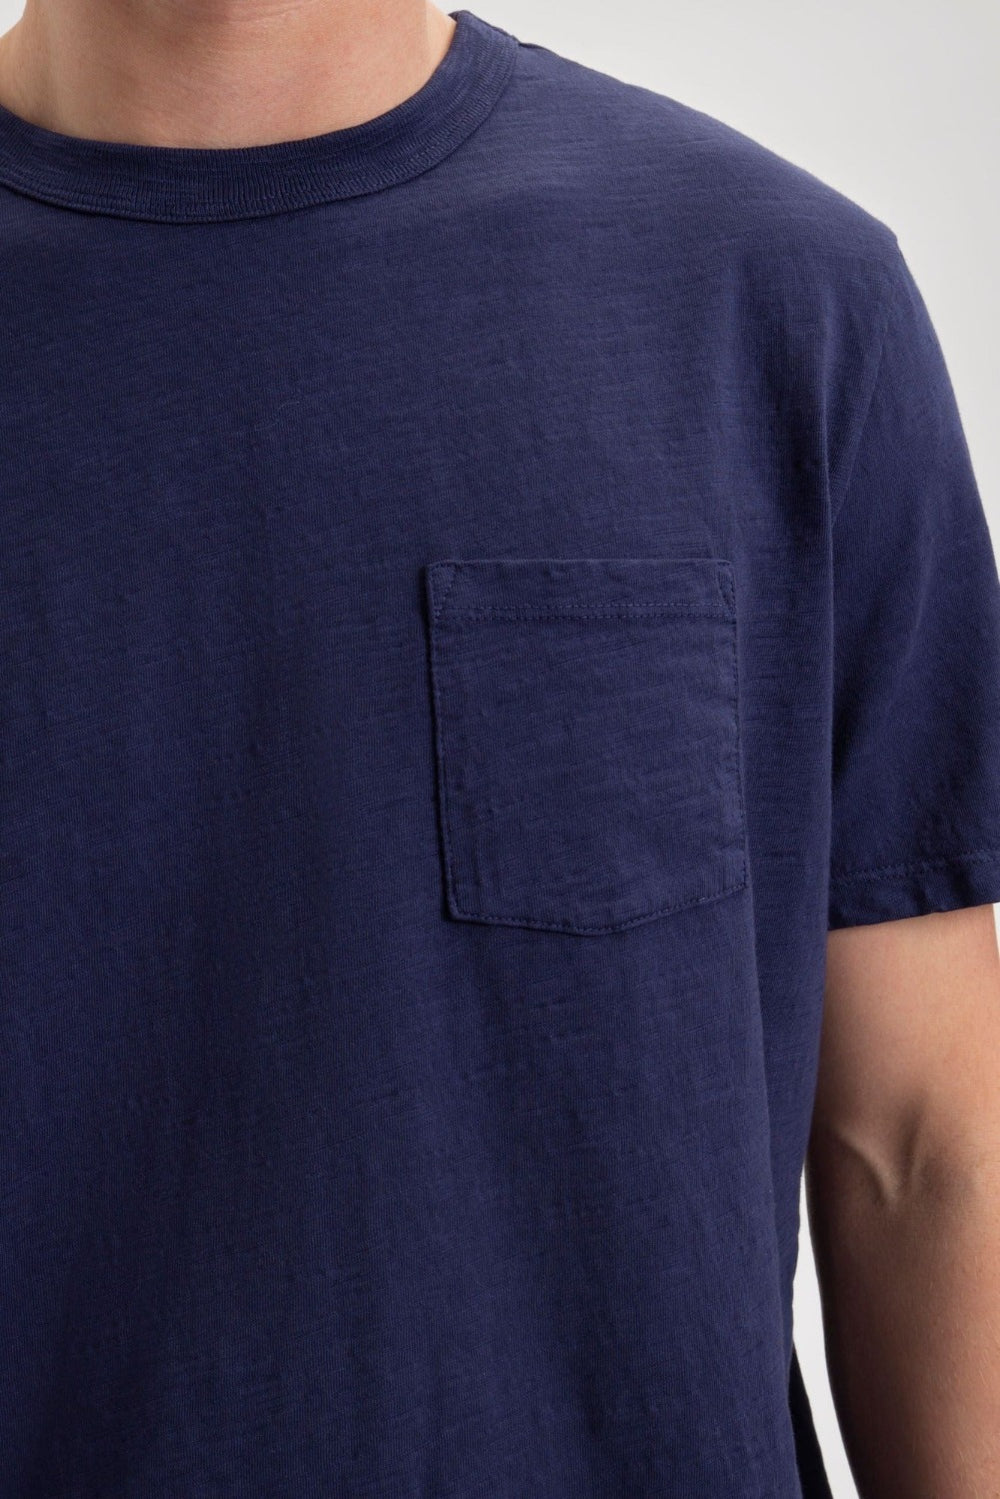 Garment Dye Beatnik T-Shirt - Navy - Ben Sherman